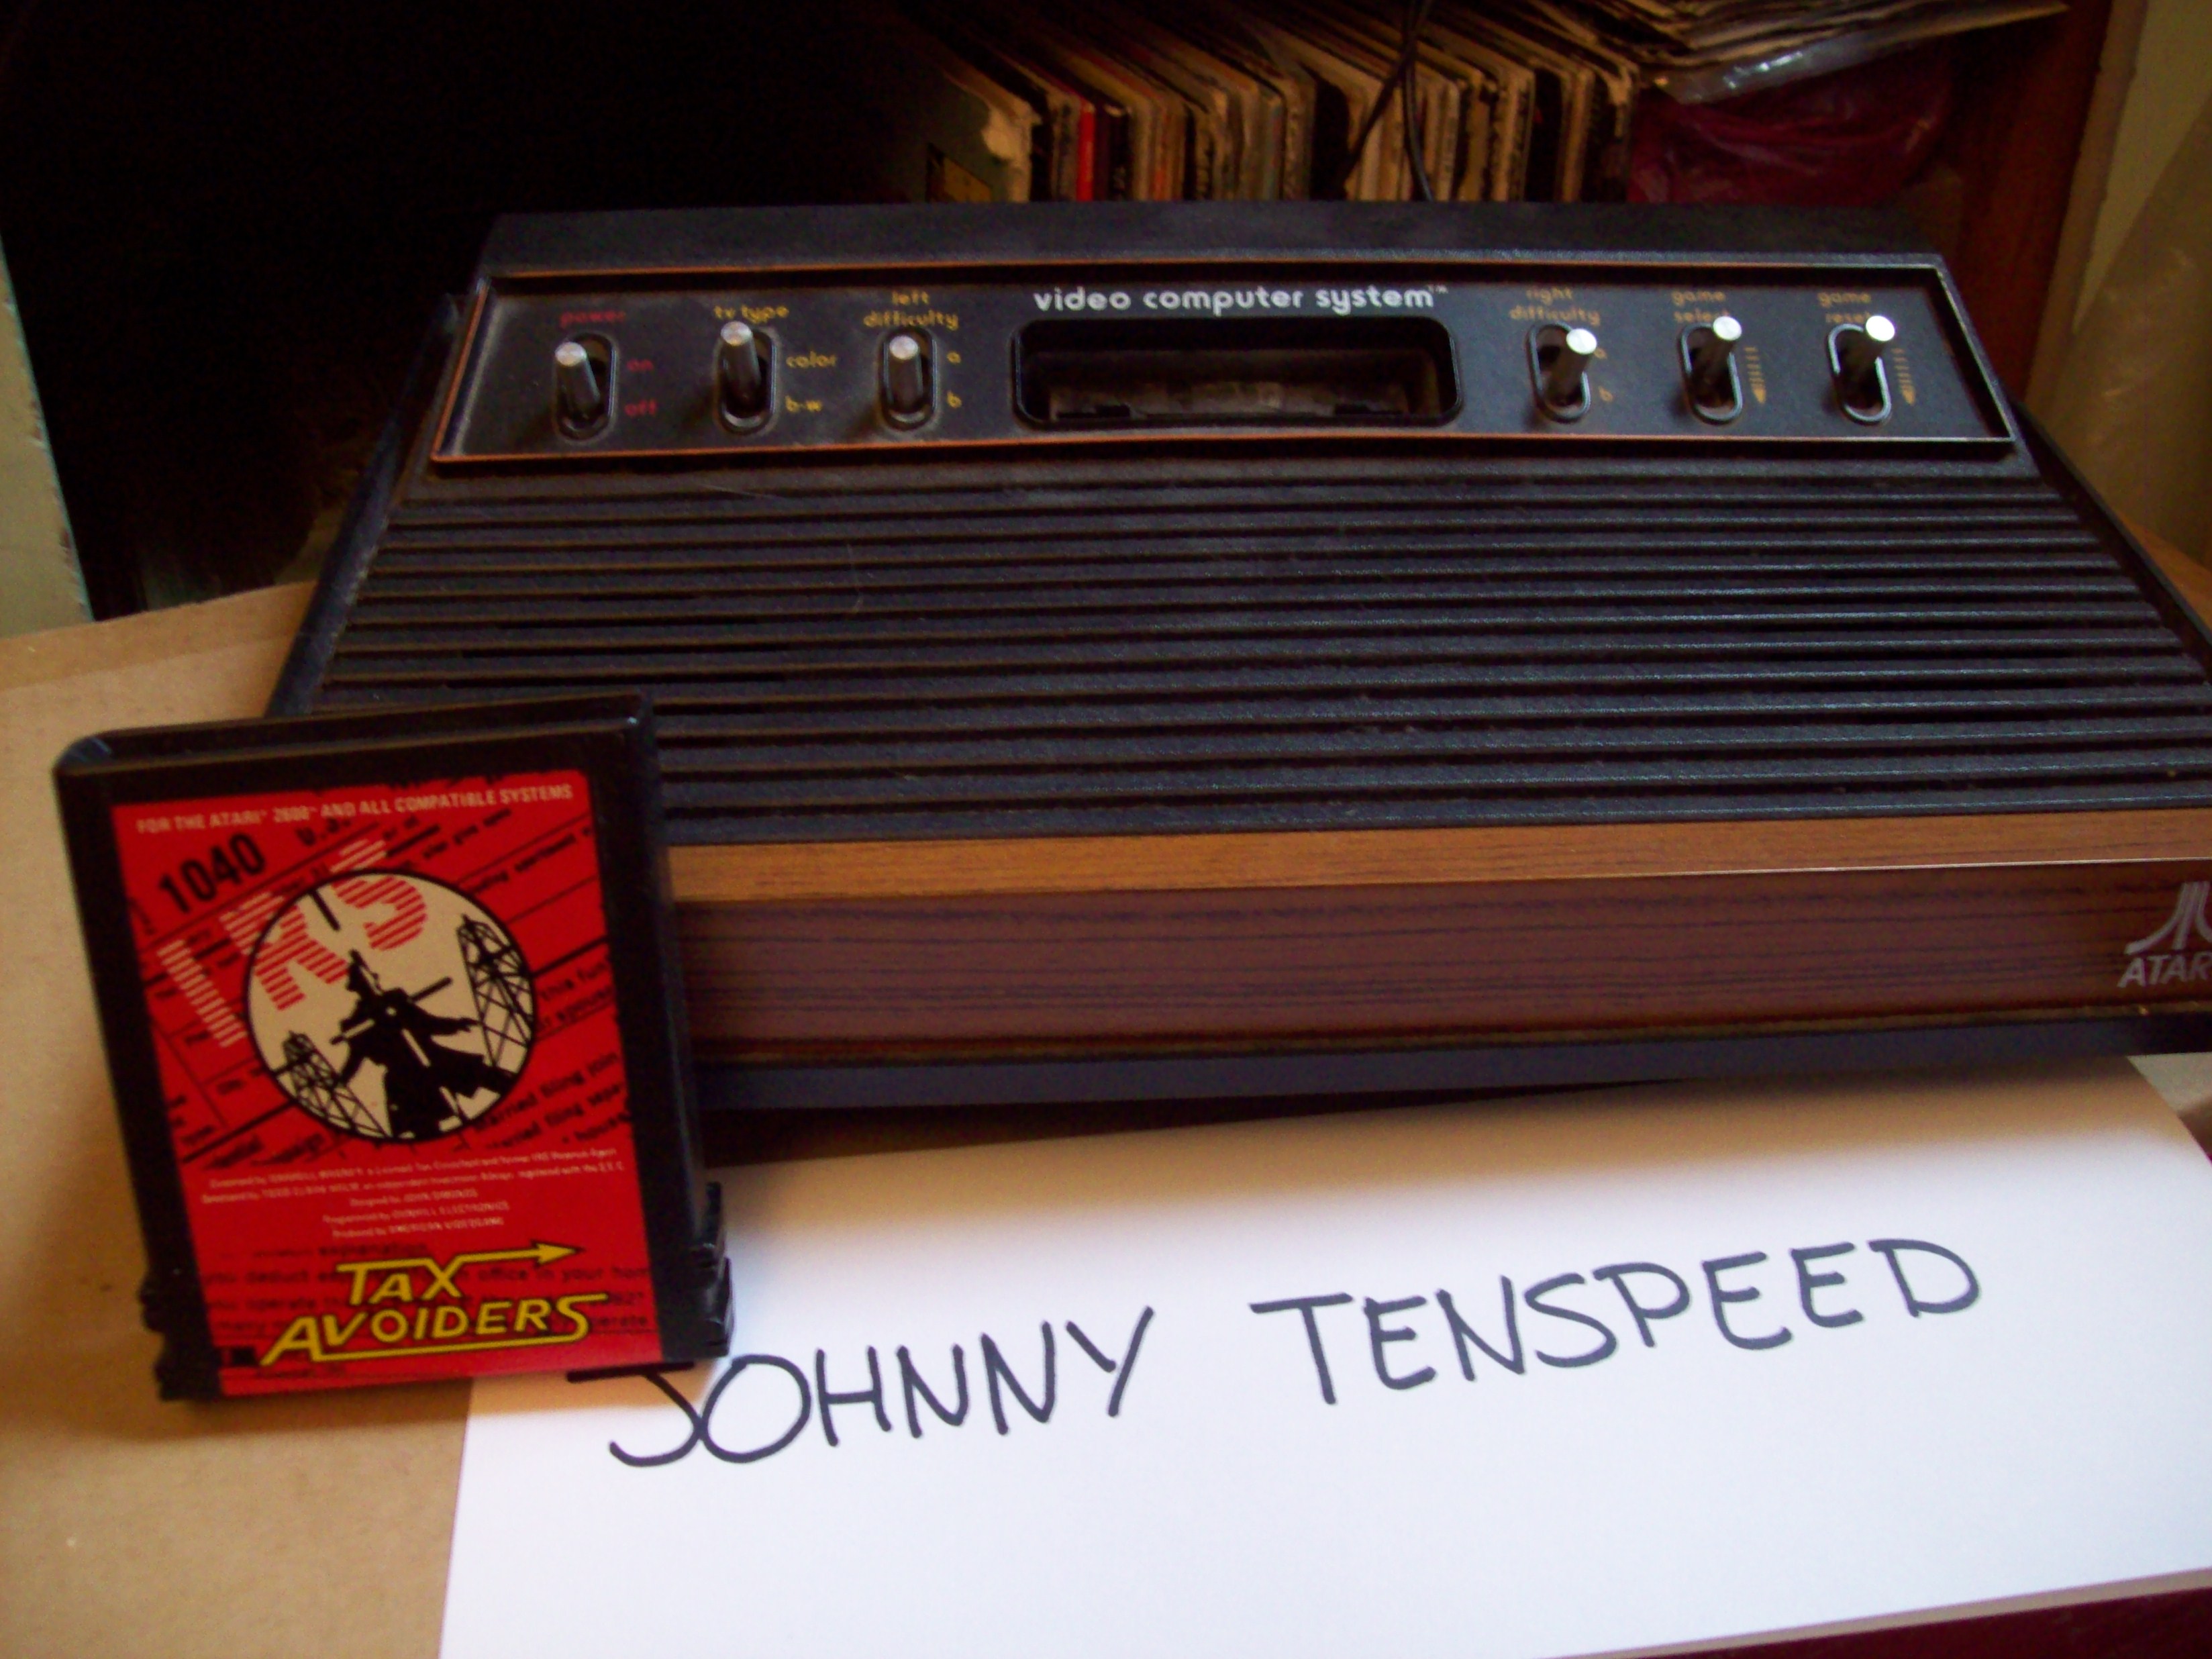 JohnnyTenspeed: Tax Avoiders (Atari 2600) 671,000 points on 2015-01-03 12:58:12